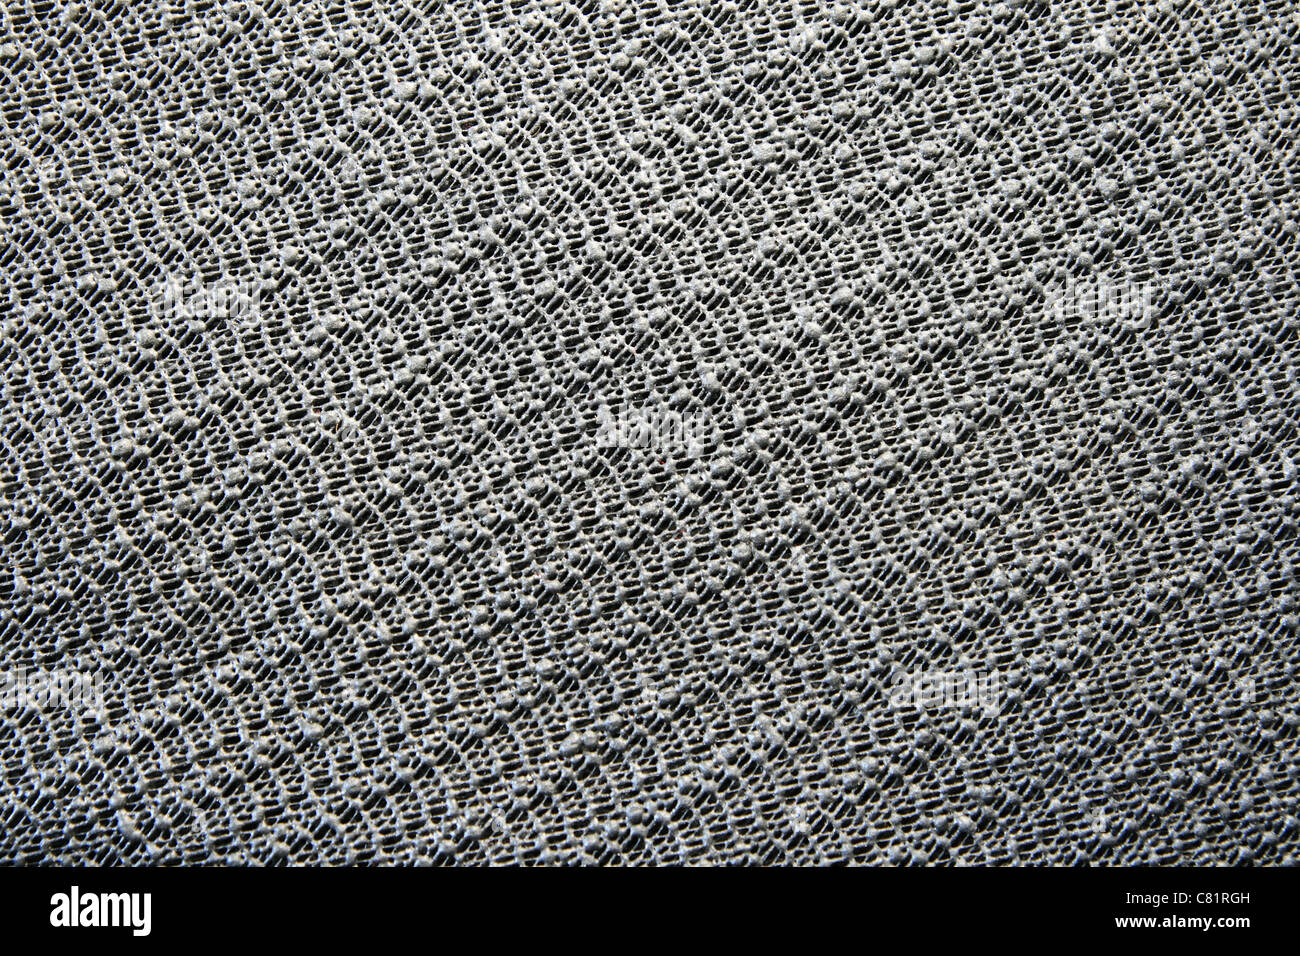 Kautschuk schwarz Anti-Rutsch klebrige Oberfläche Pad Hintergrundtextur Stockfoto